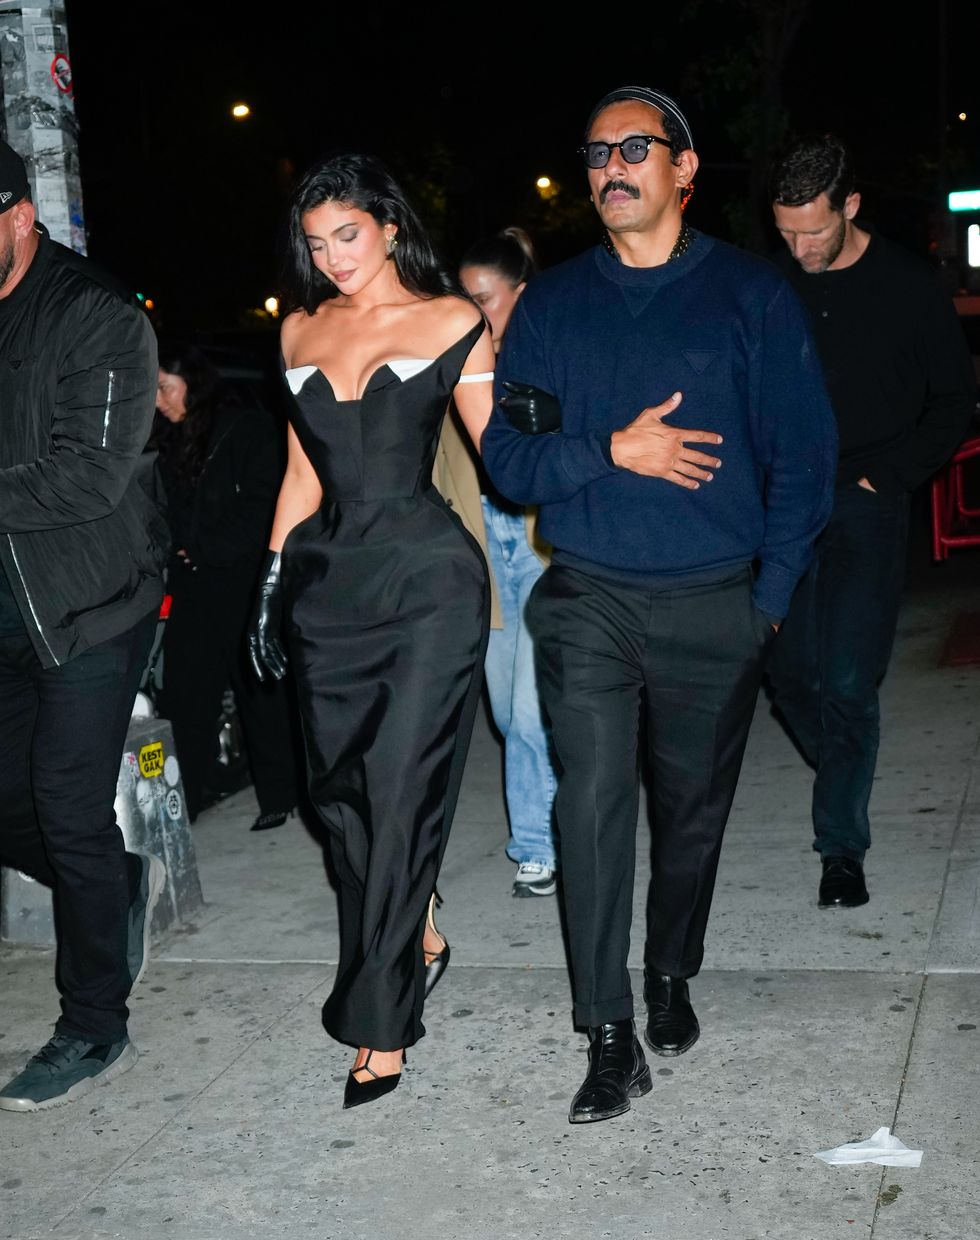 Kylie Jenner Wears a Black Corset Bodysuit on Instagram